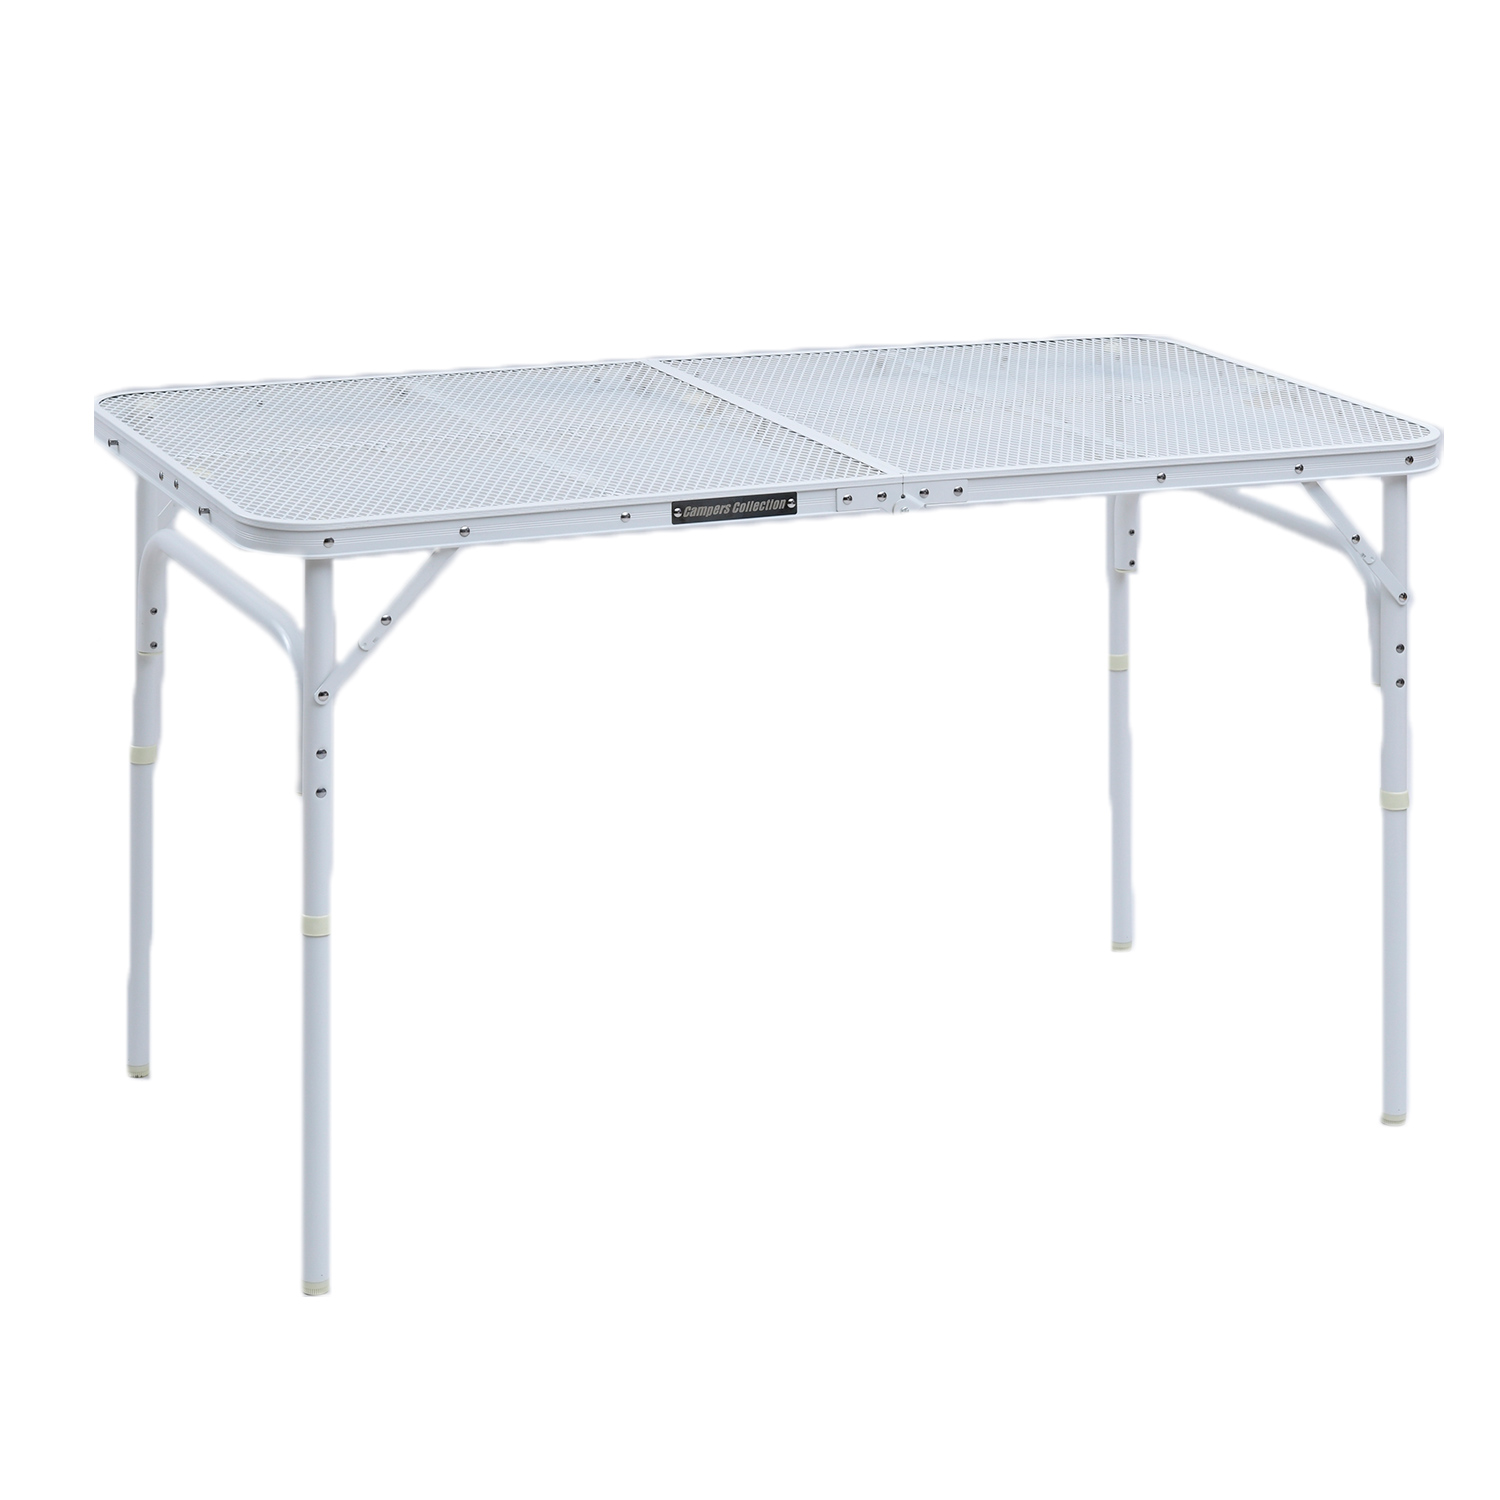 メッシュテーブル タフライト キャンプ テーブル アウトドア テーブル 120×60cm TLT-1260 アウトドアテーブル 折りたたみテーブル